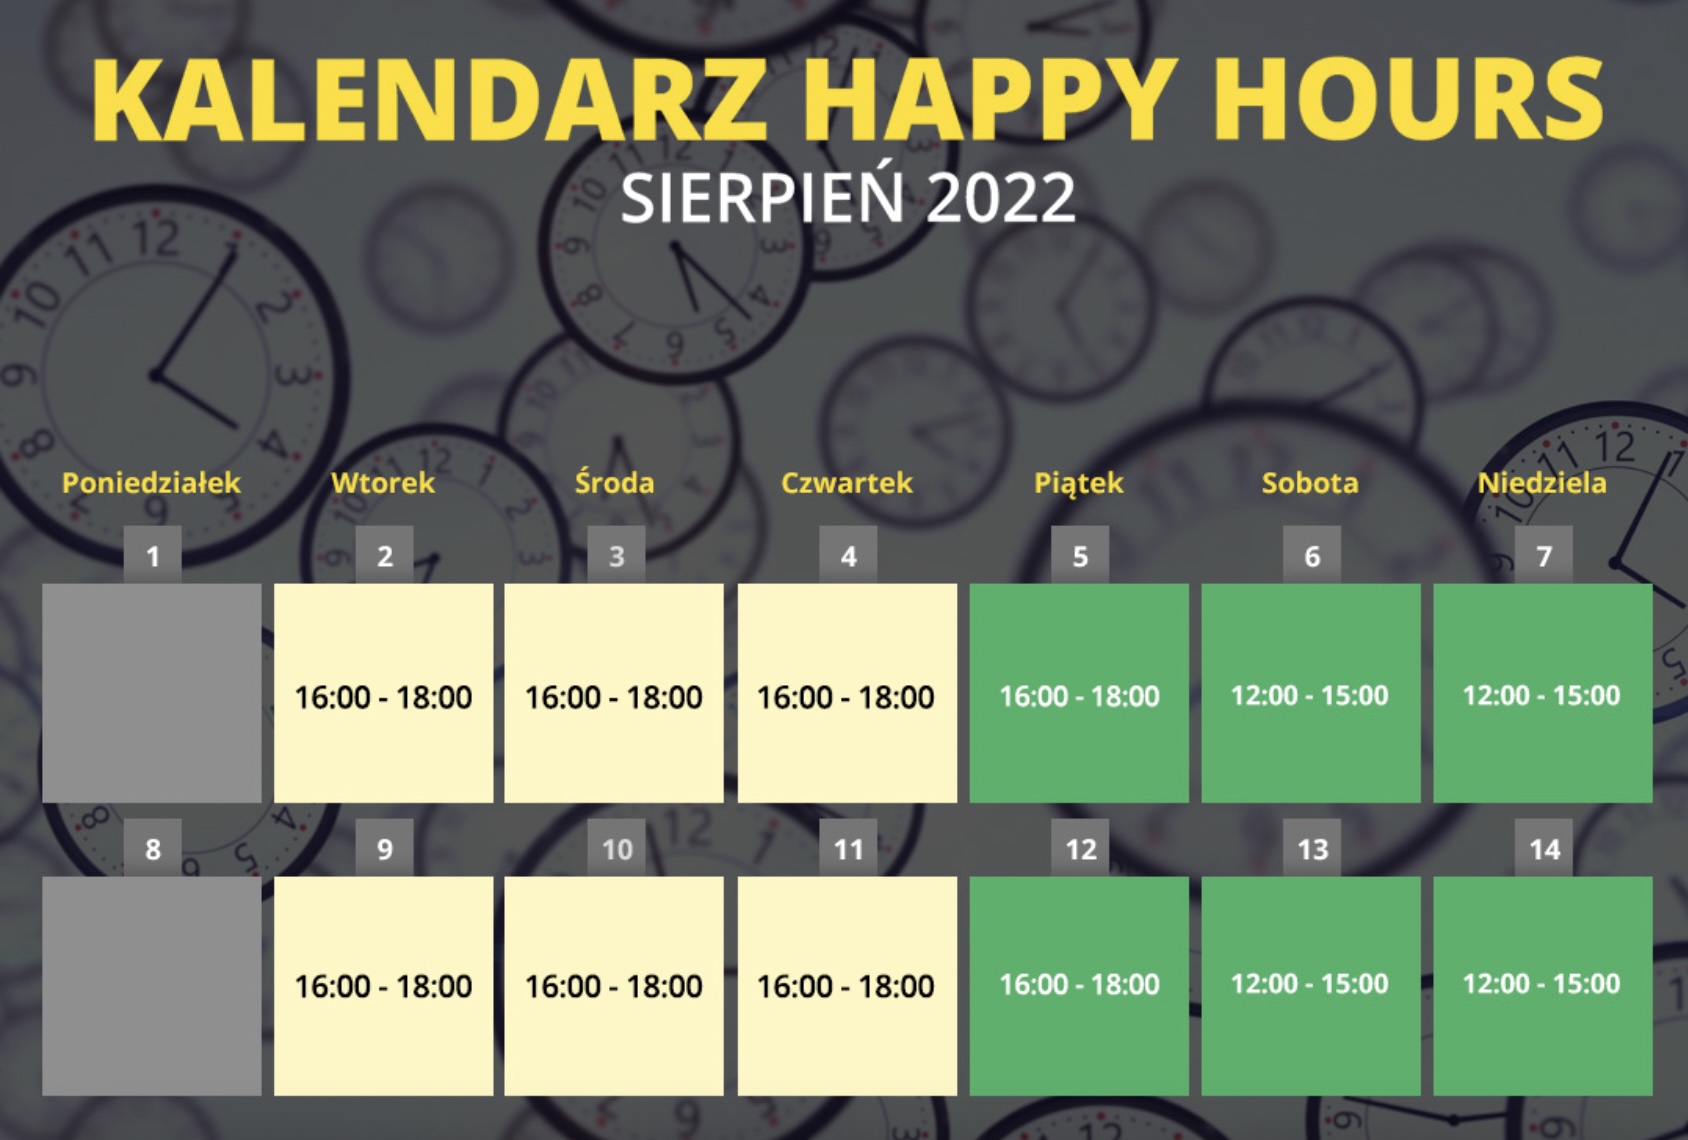 Kalendarz Happy Hours Fortuna sierpień 2022